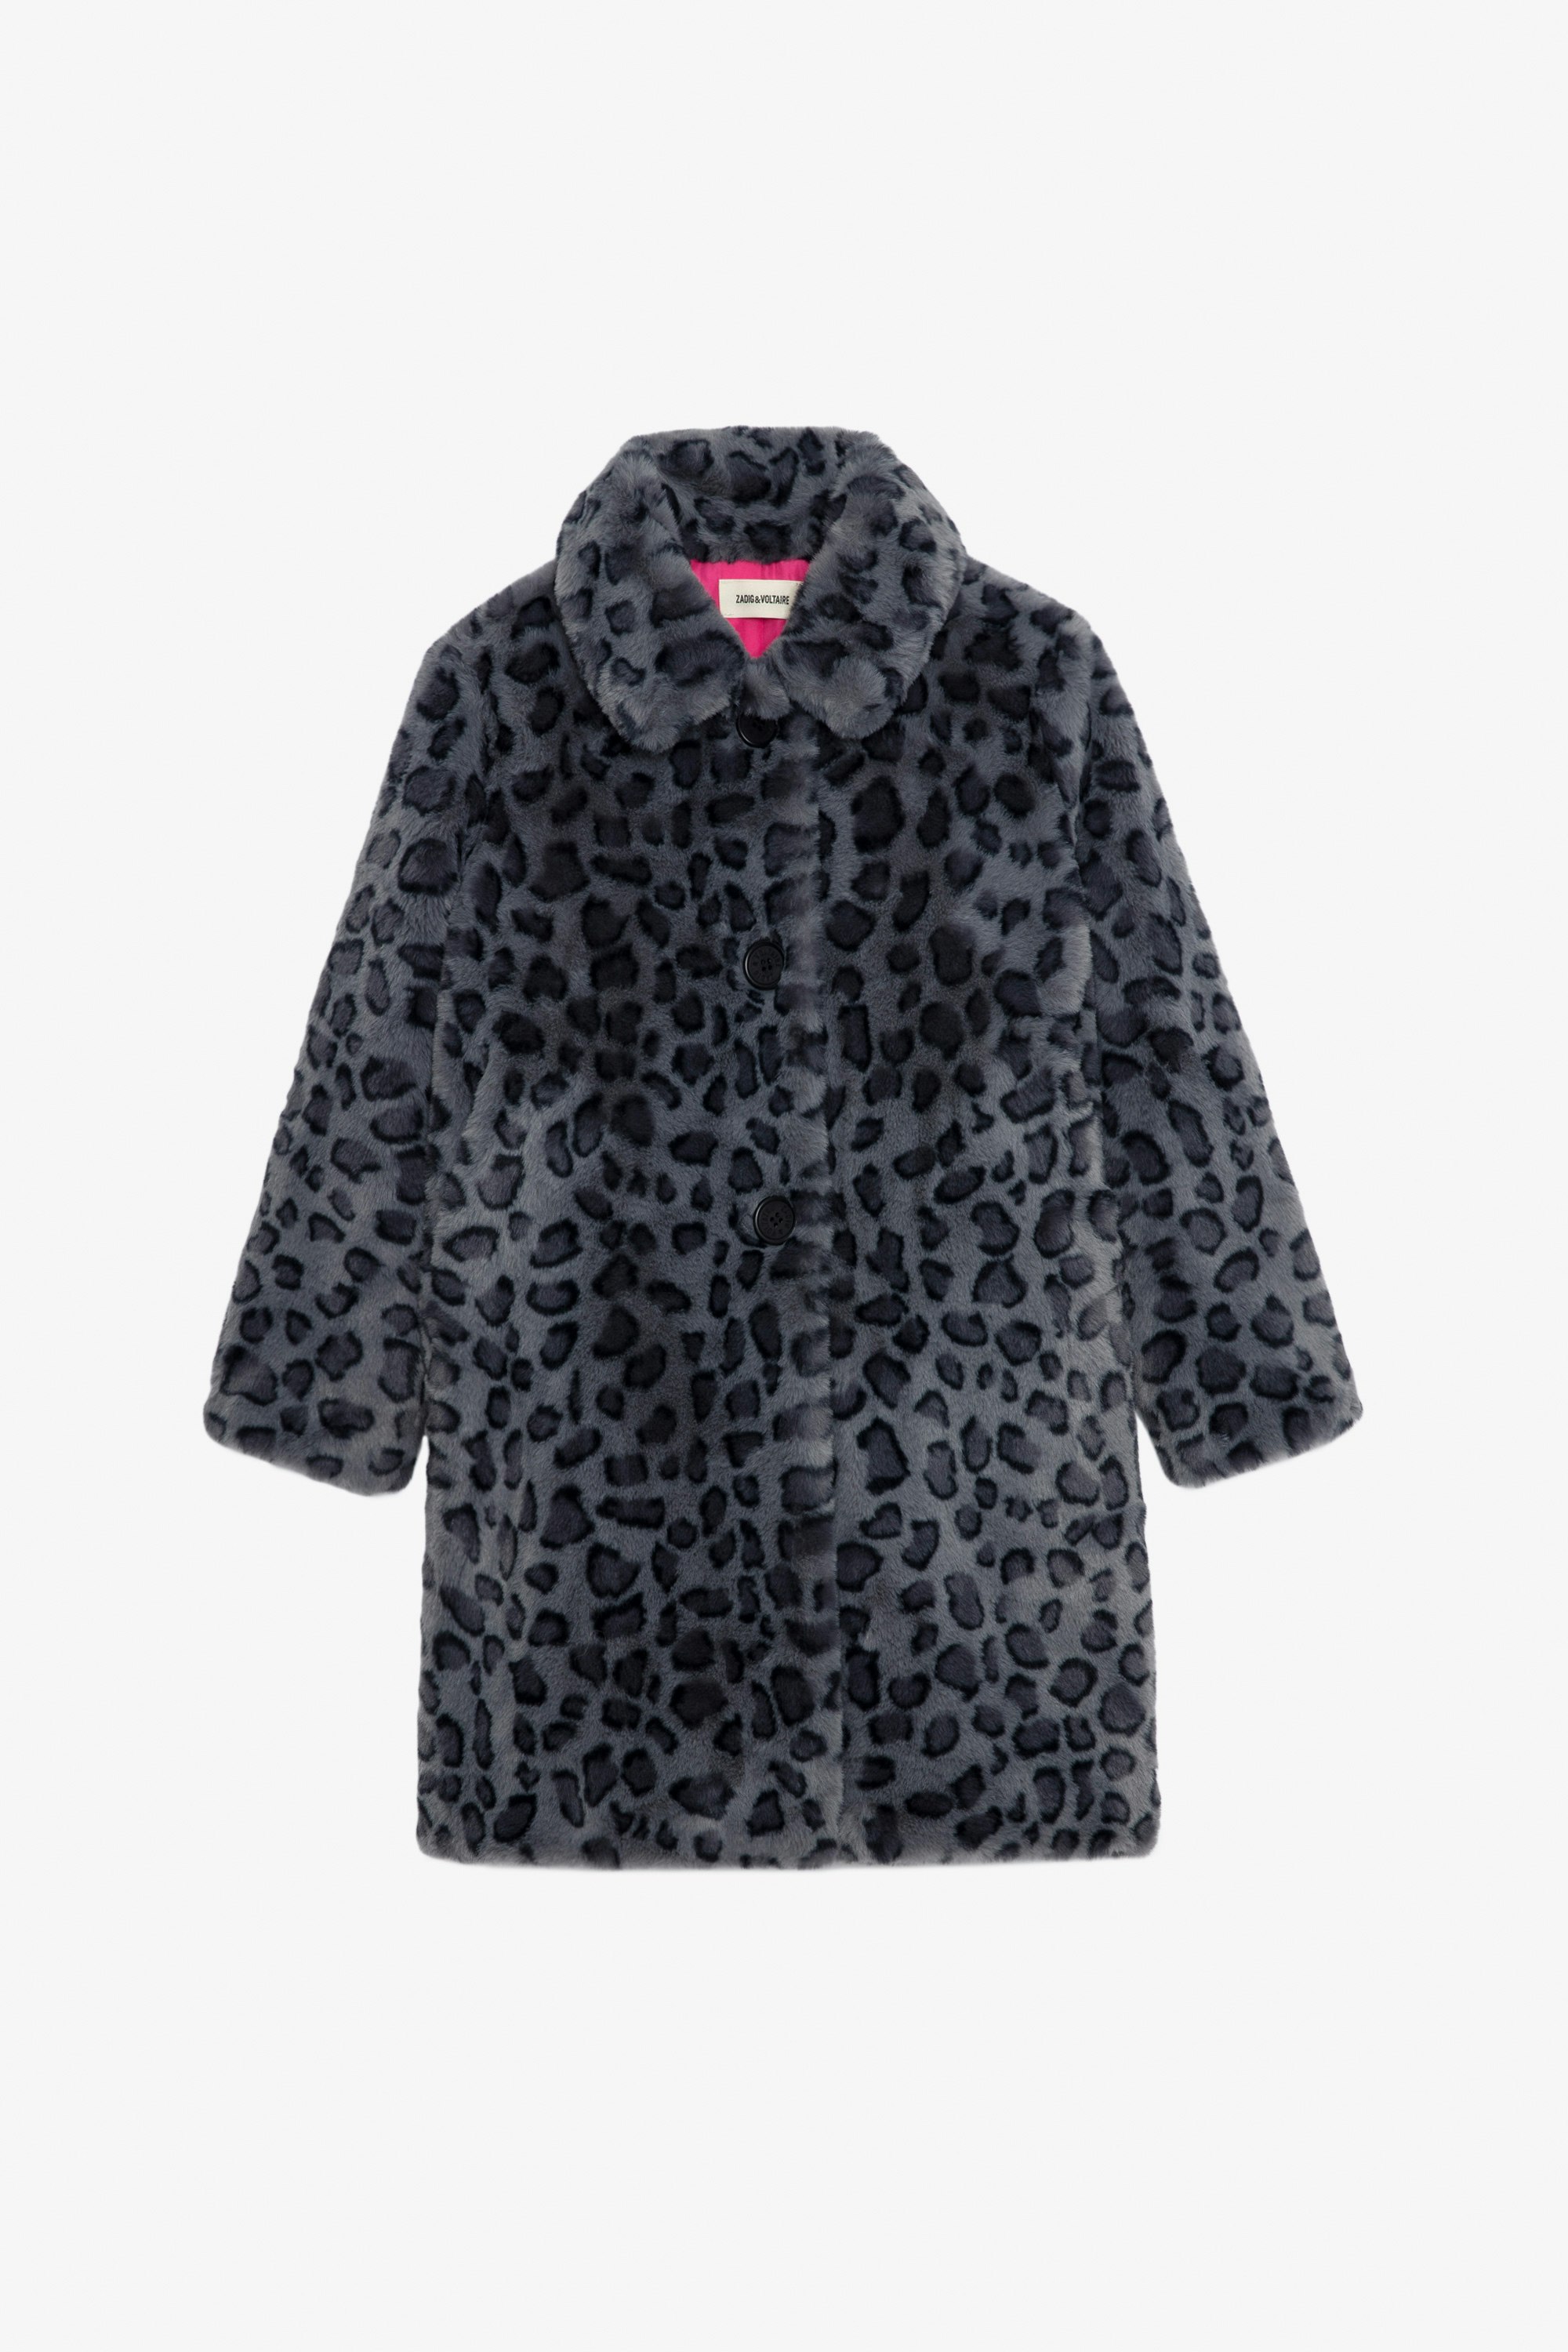 Manteau Madeleine Fille - Manteau en polaire noire imprimé léopard et doublure contrastée fille.